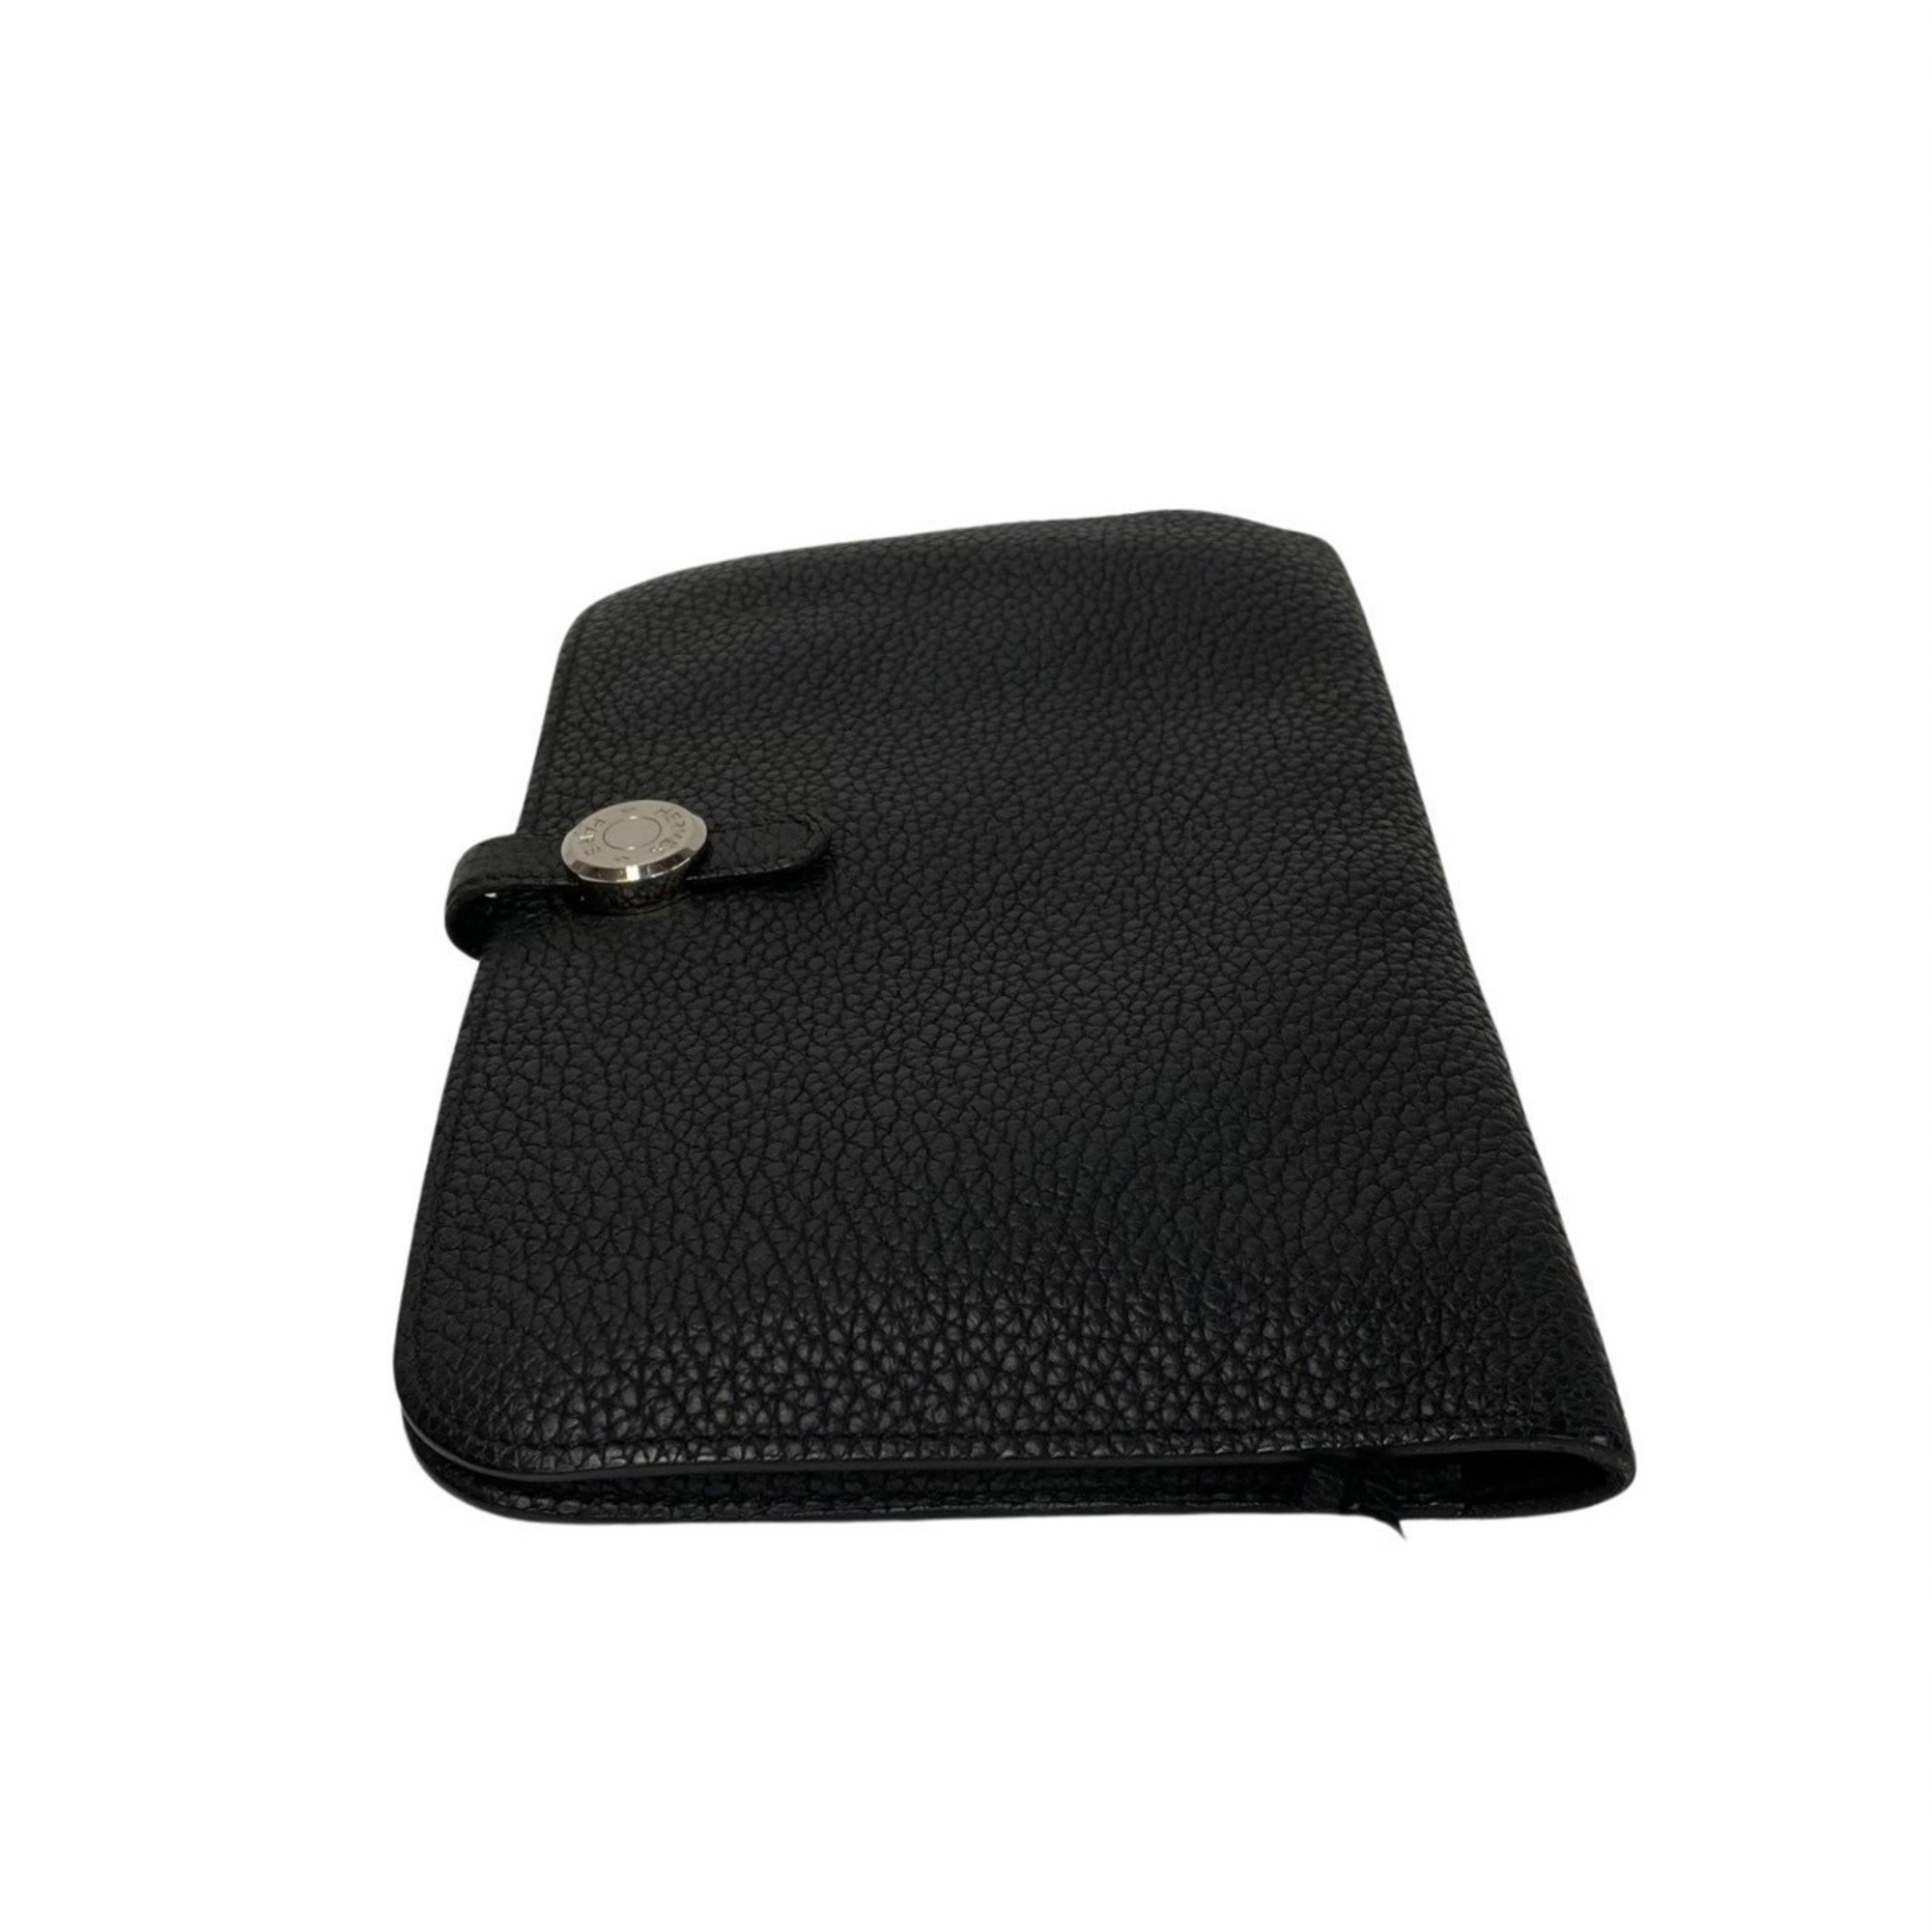 HERMES Dogon GM Hardware Togo Leather Bifold Long Wallet Black 23777